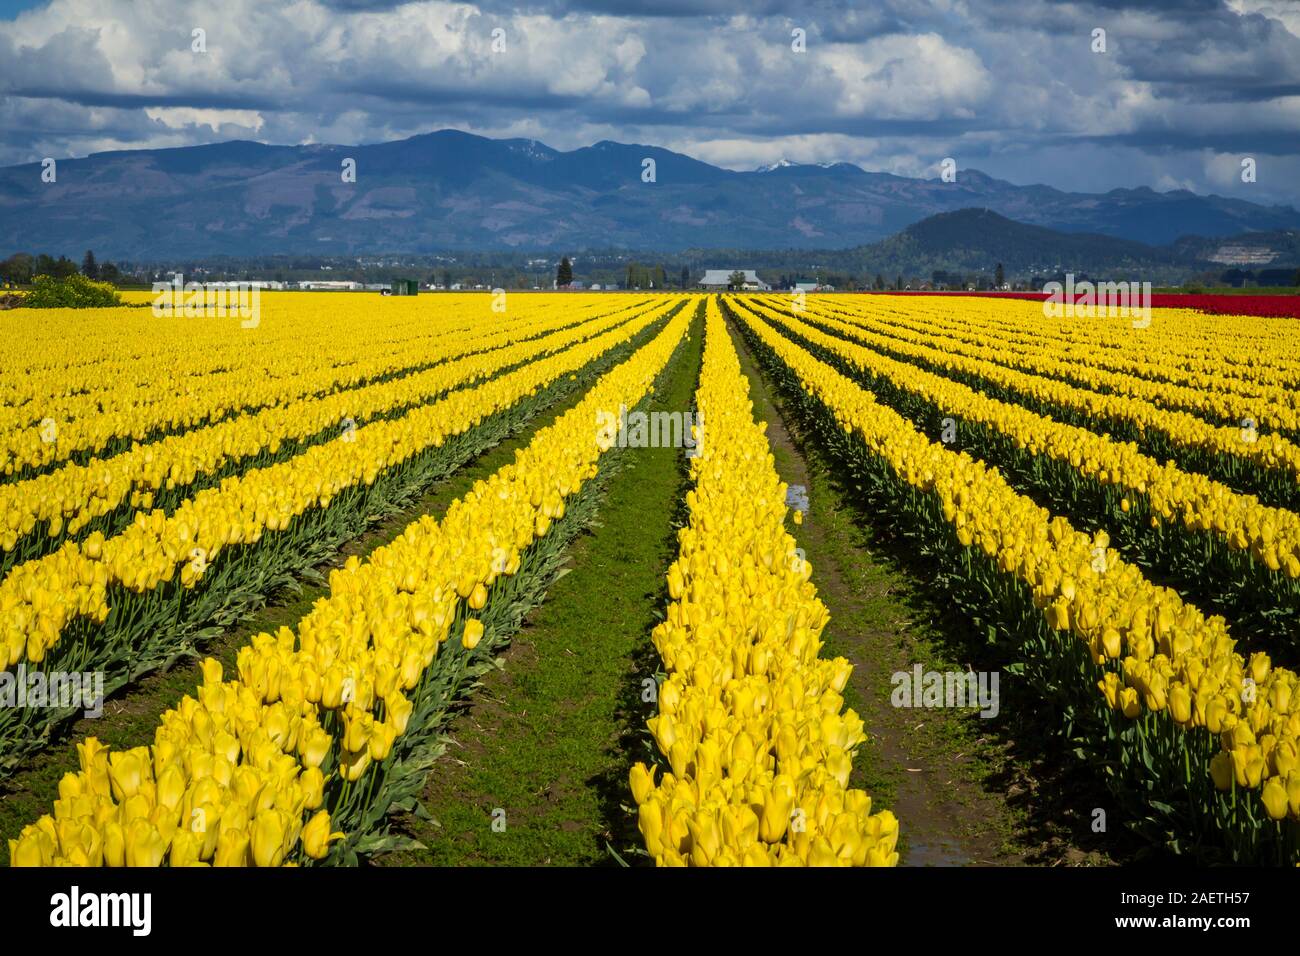 Roozengaarde tulip bulb fields near Mount Vernon, Washington, USA. Stock Photo